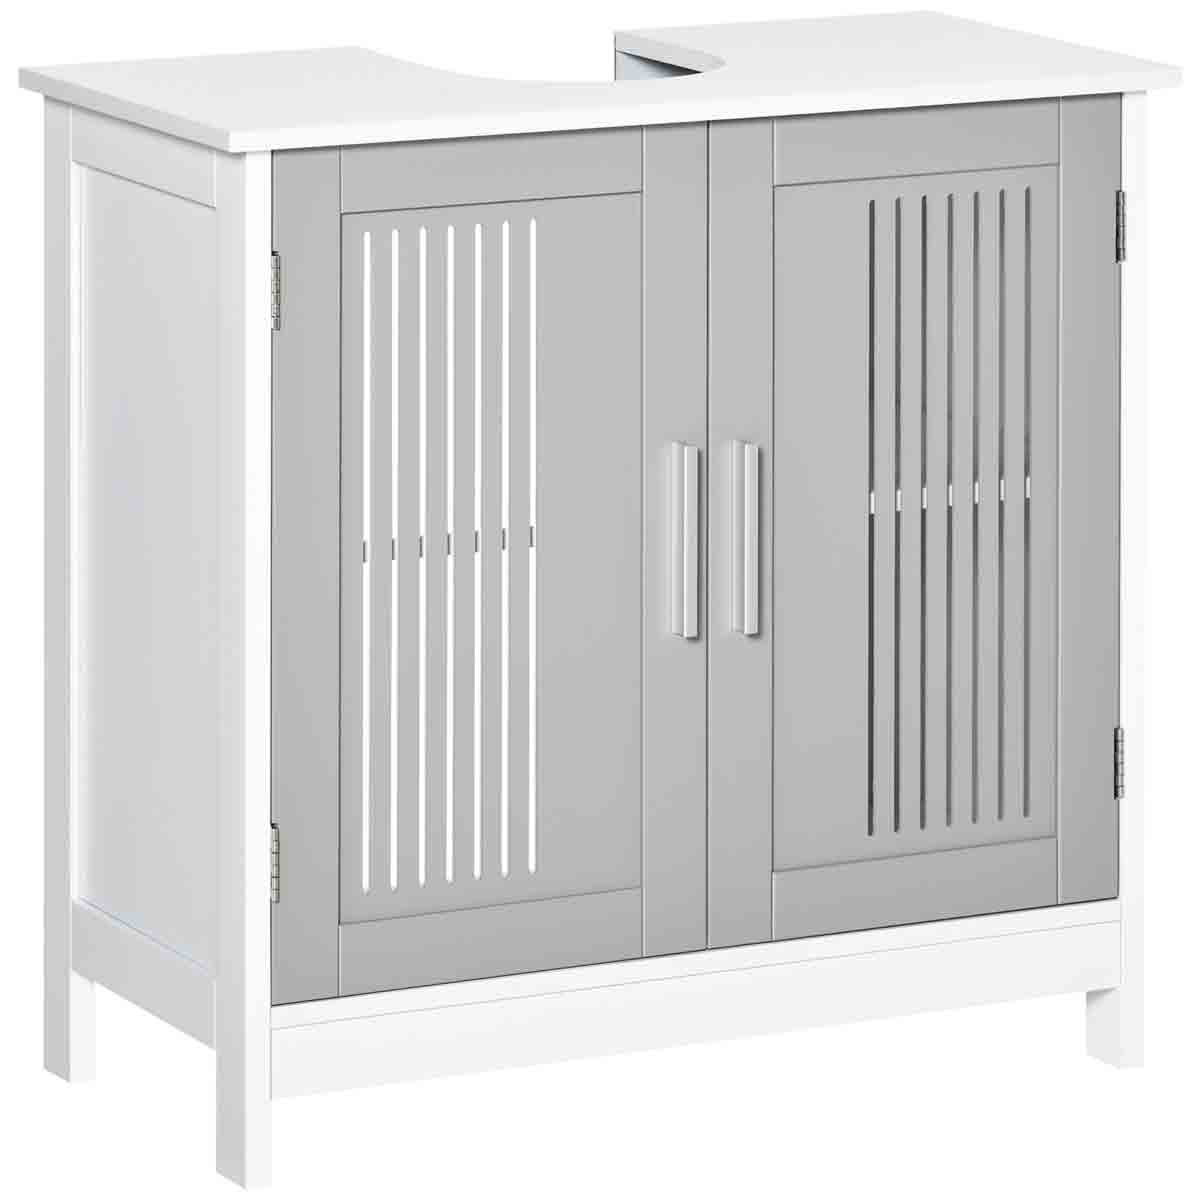 Kleankin Bathroom Pedestal Under Sink Cabinet With Storage Shelf, 2 Doors, Grey